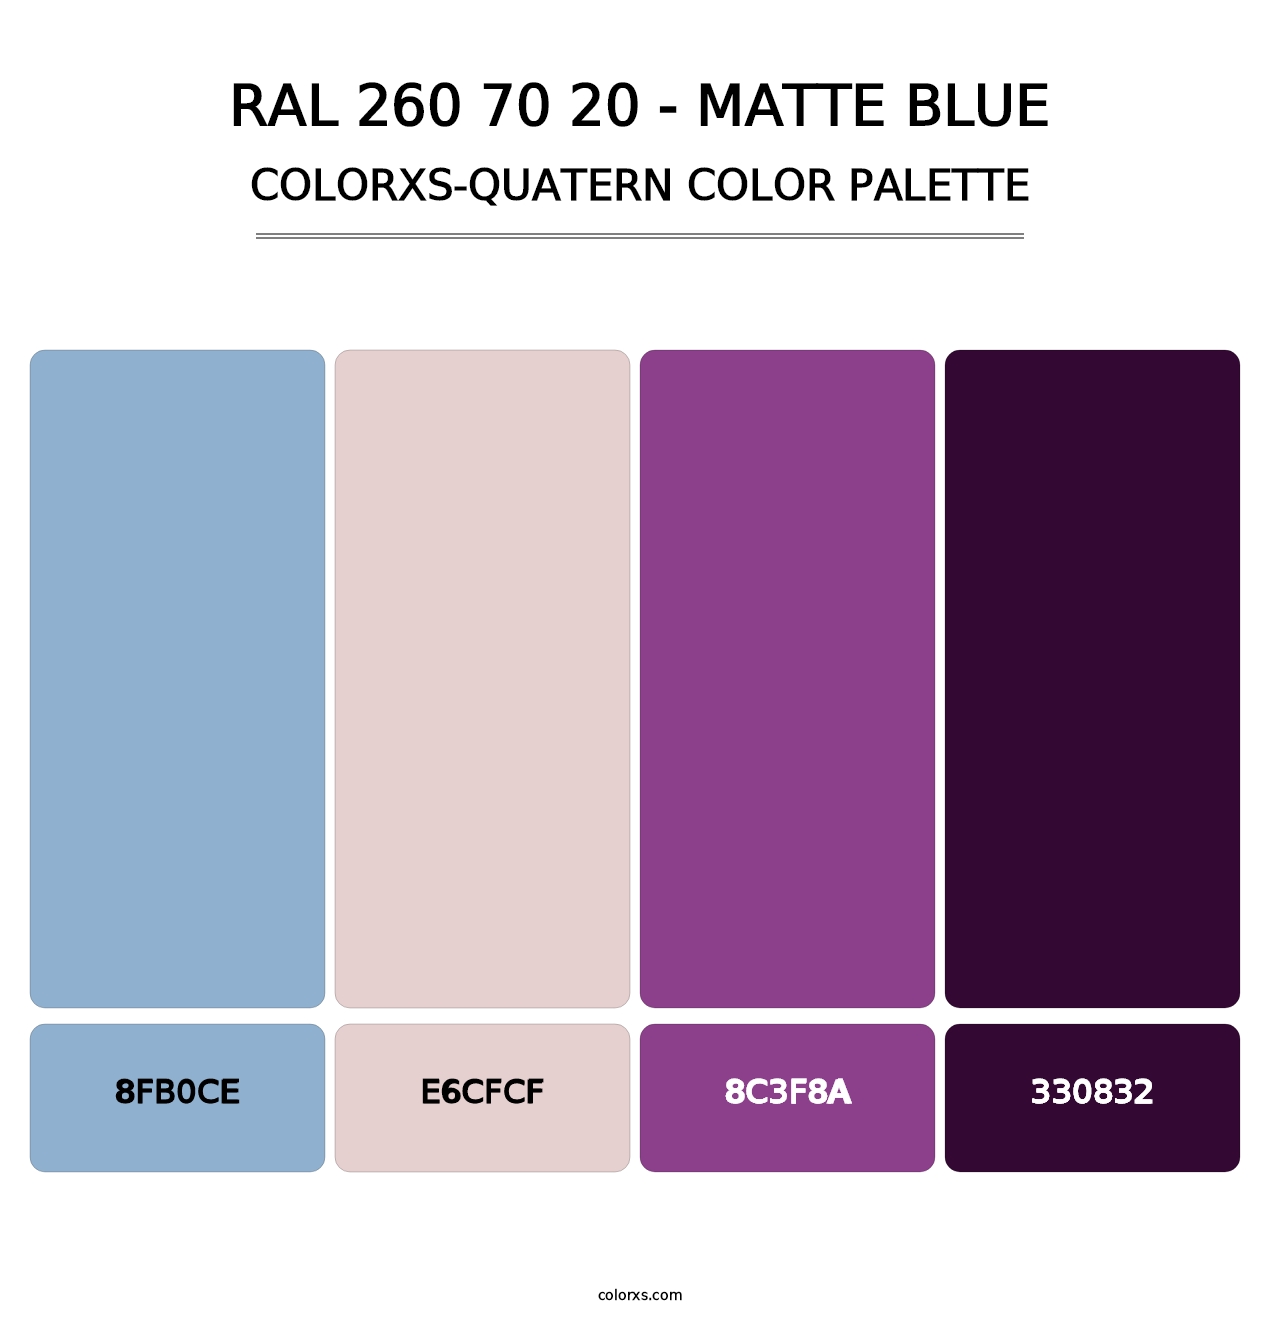 RAL 260 70 20 - Matte Blue - Colorxs Quatern Palette